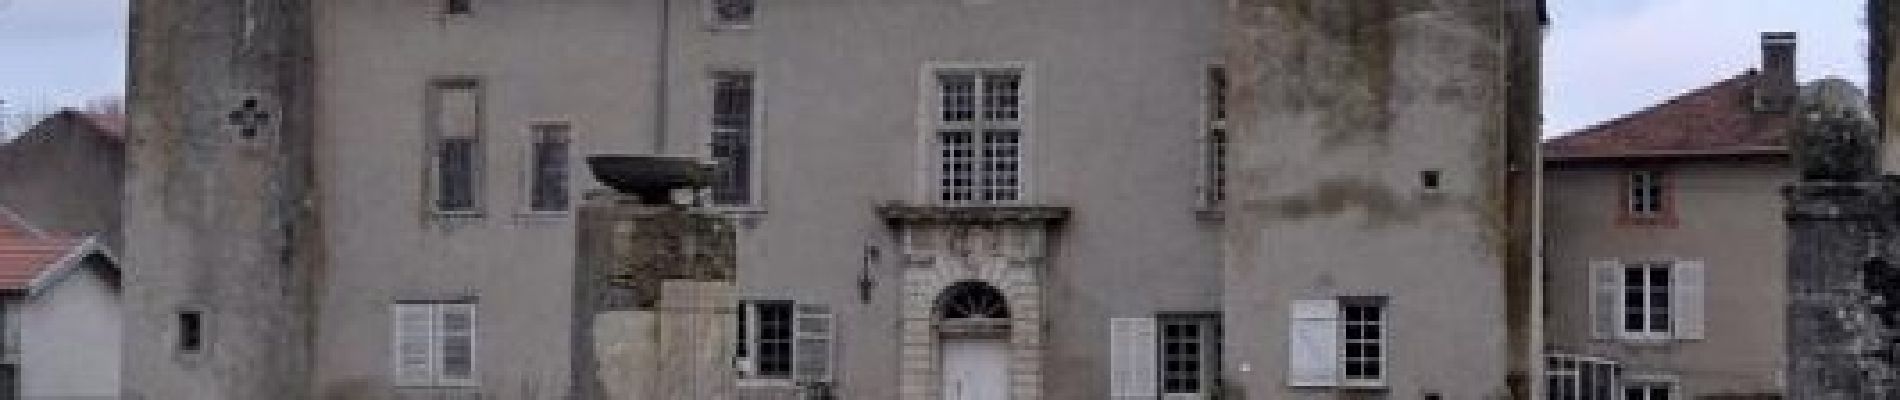 POI Buissoncourt - Buissoncourt : Château de Romémont du XVIIème siècle - Photo